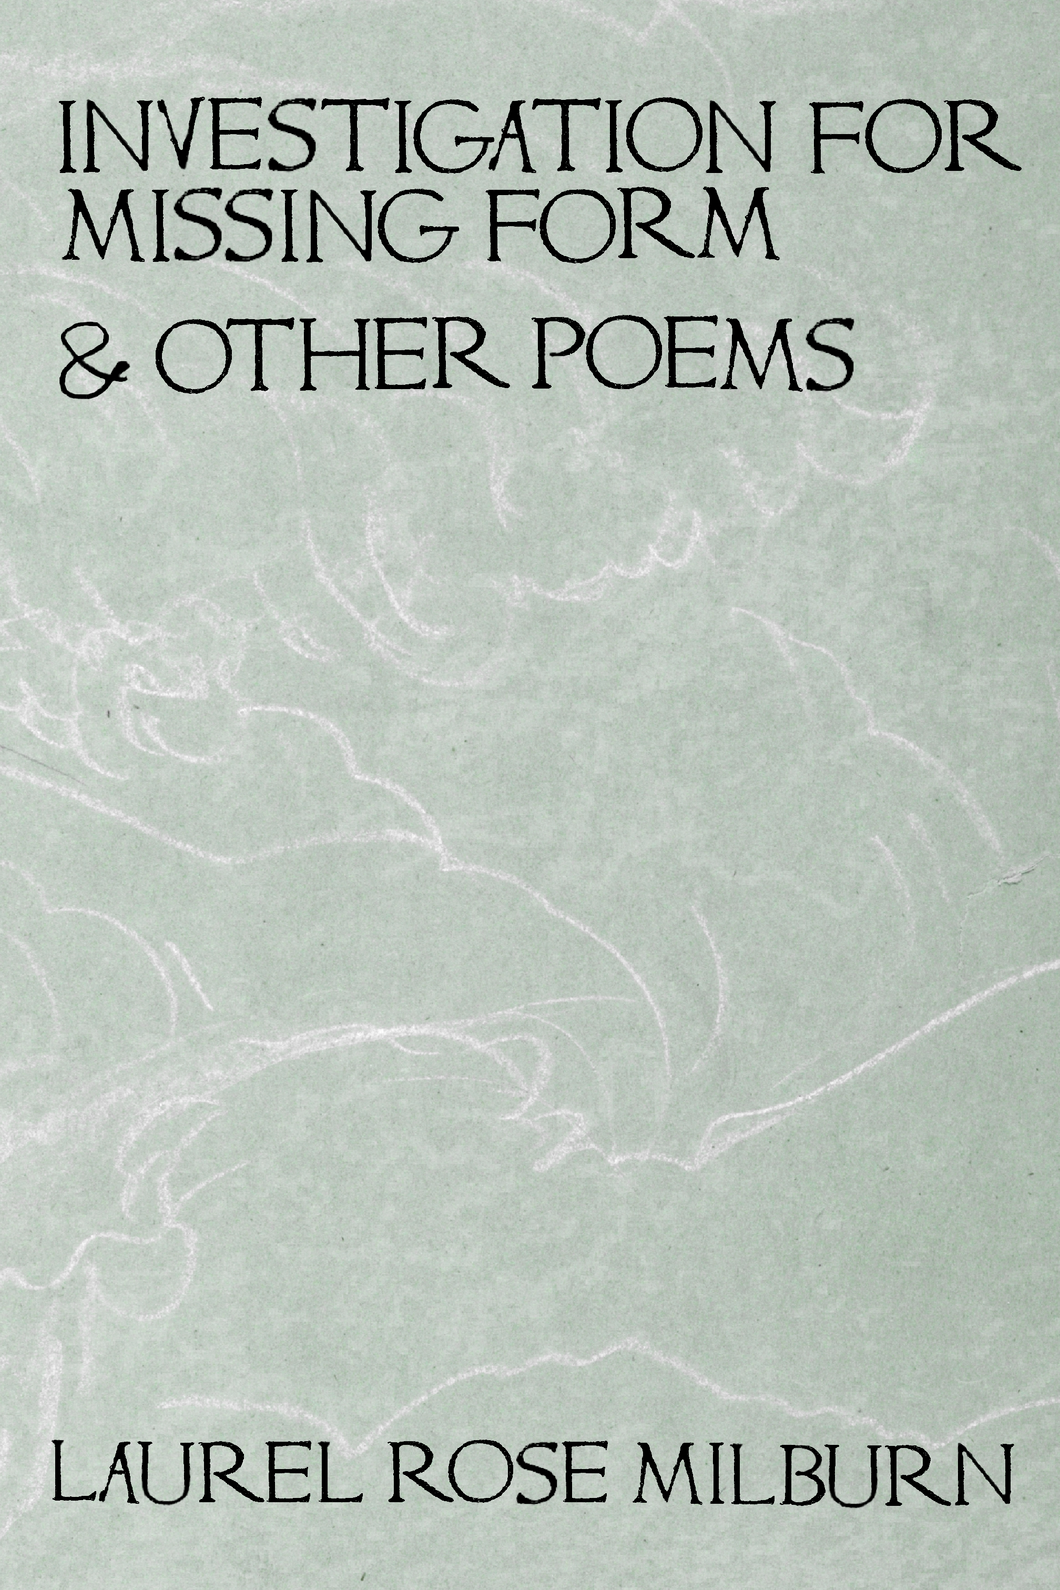 Investigation for Missing Form & Other Poems, by Laurel Rose Milburn-Print Books-Bottlecap Press